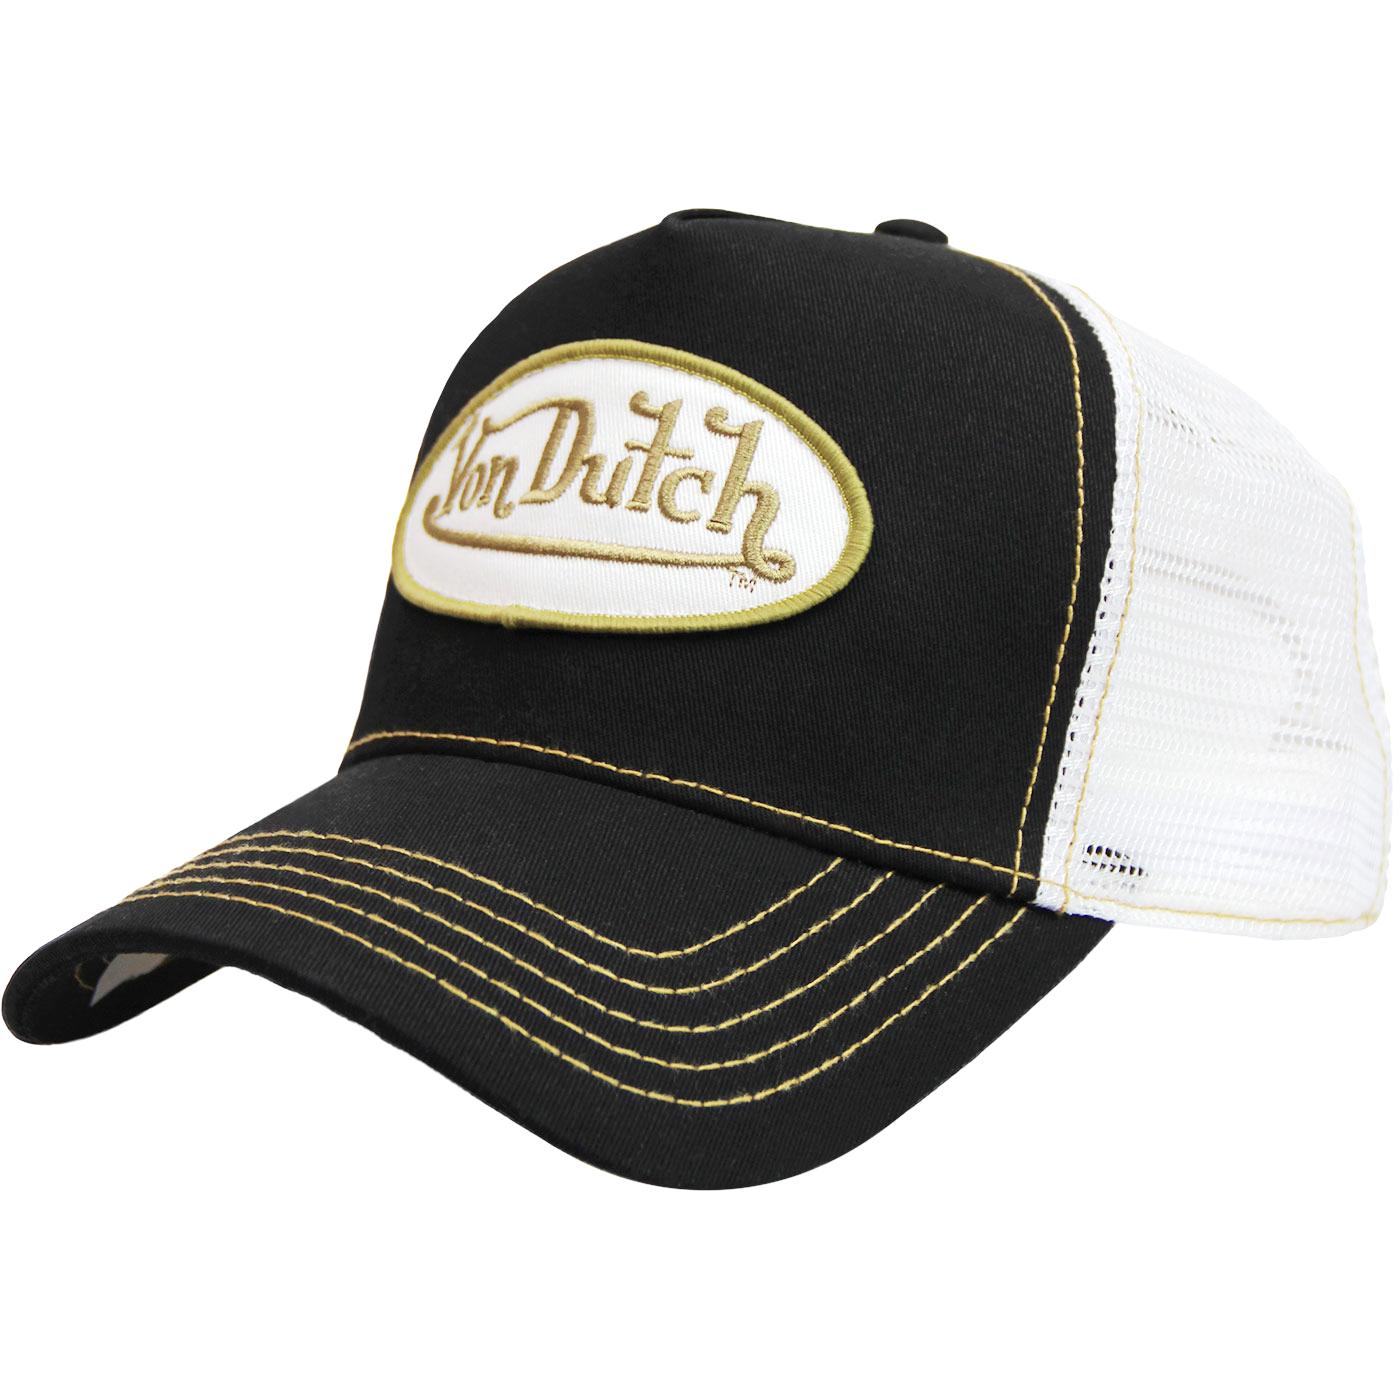 VON DUTCH Patch Retro Trucker Cap BLACK/GOLD